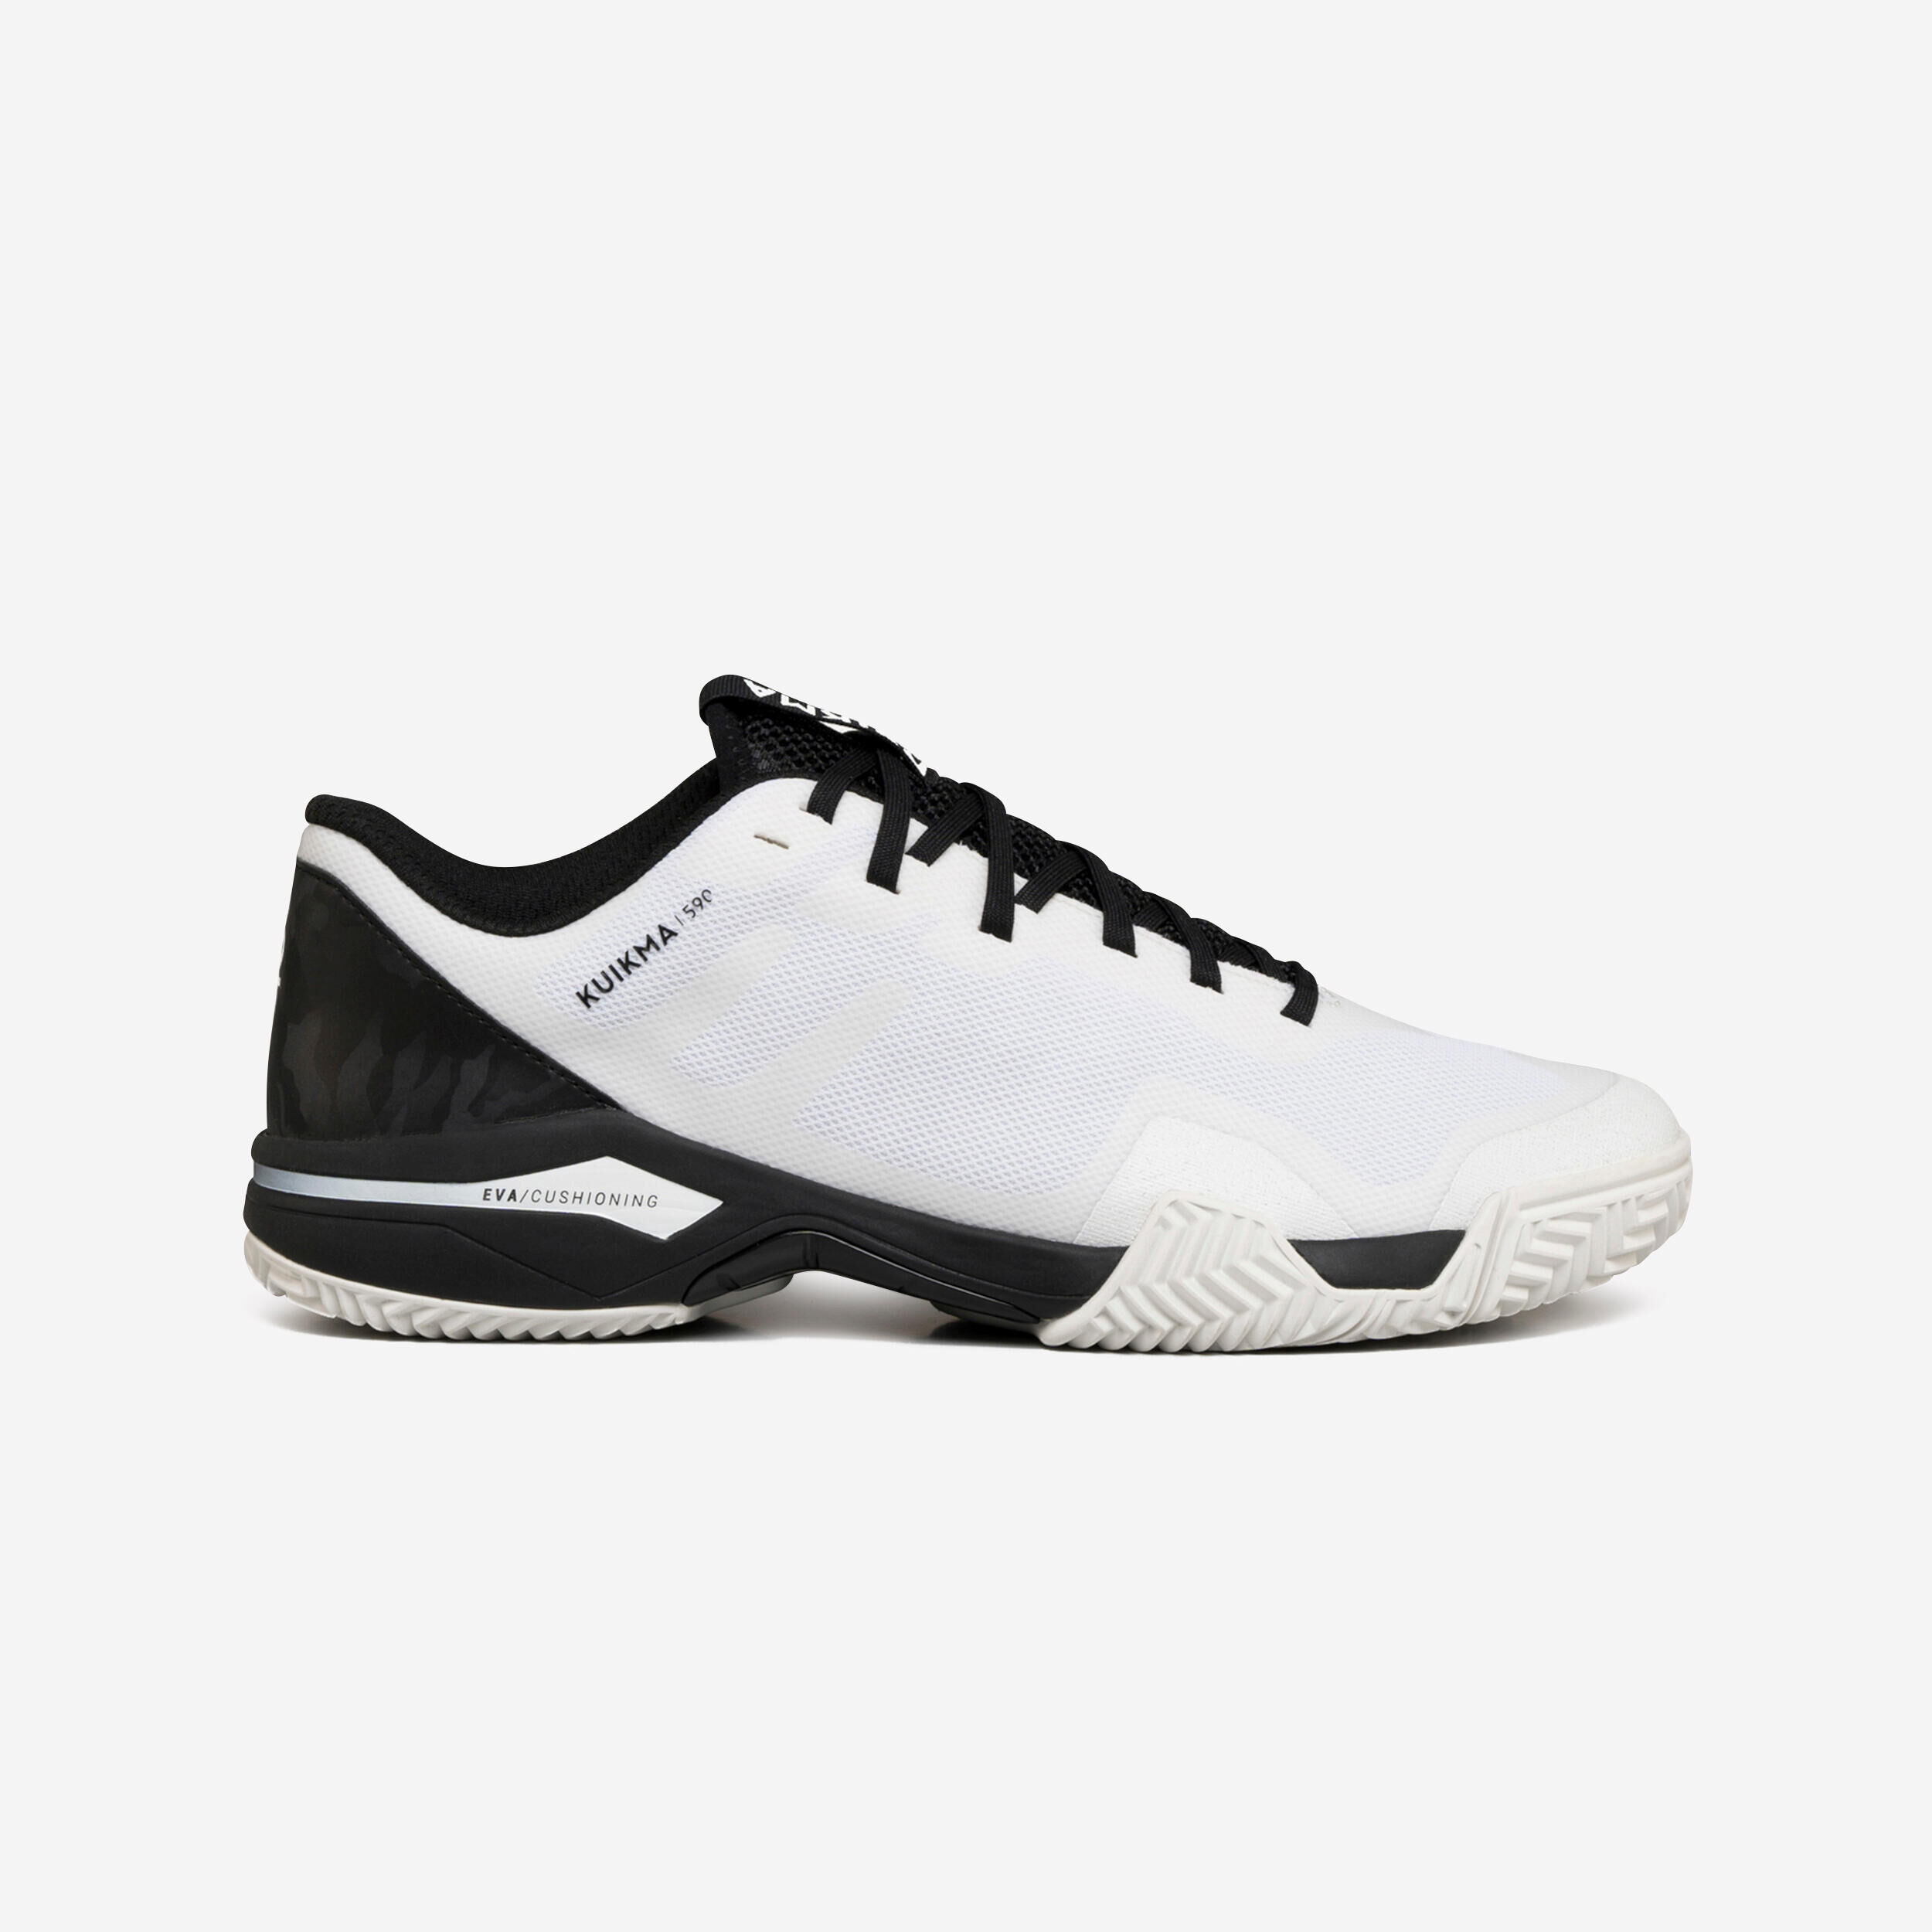 KUIKMA Men's Padel Shoes PS 590 - White